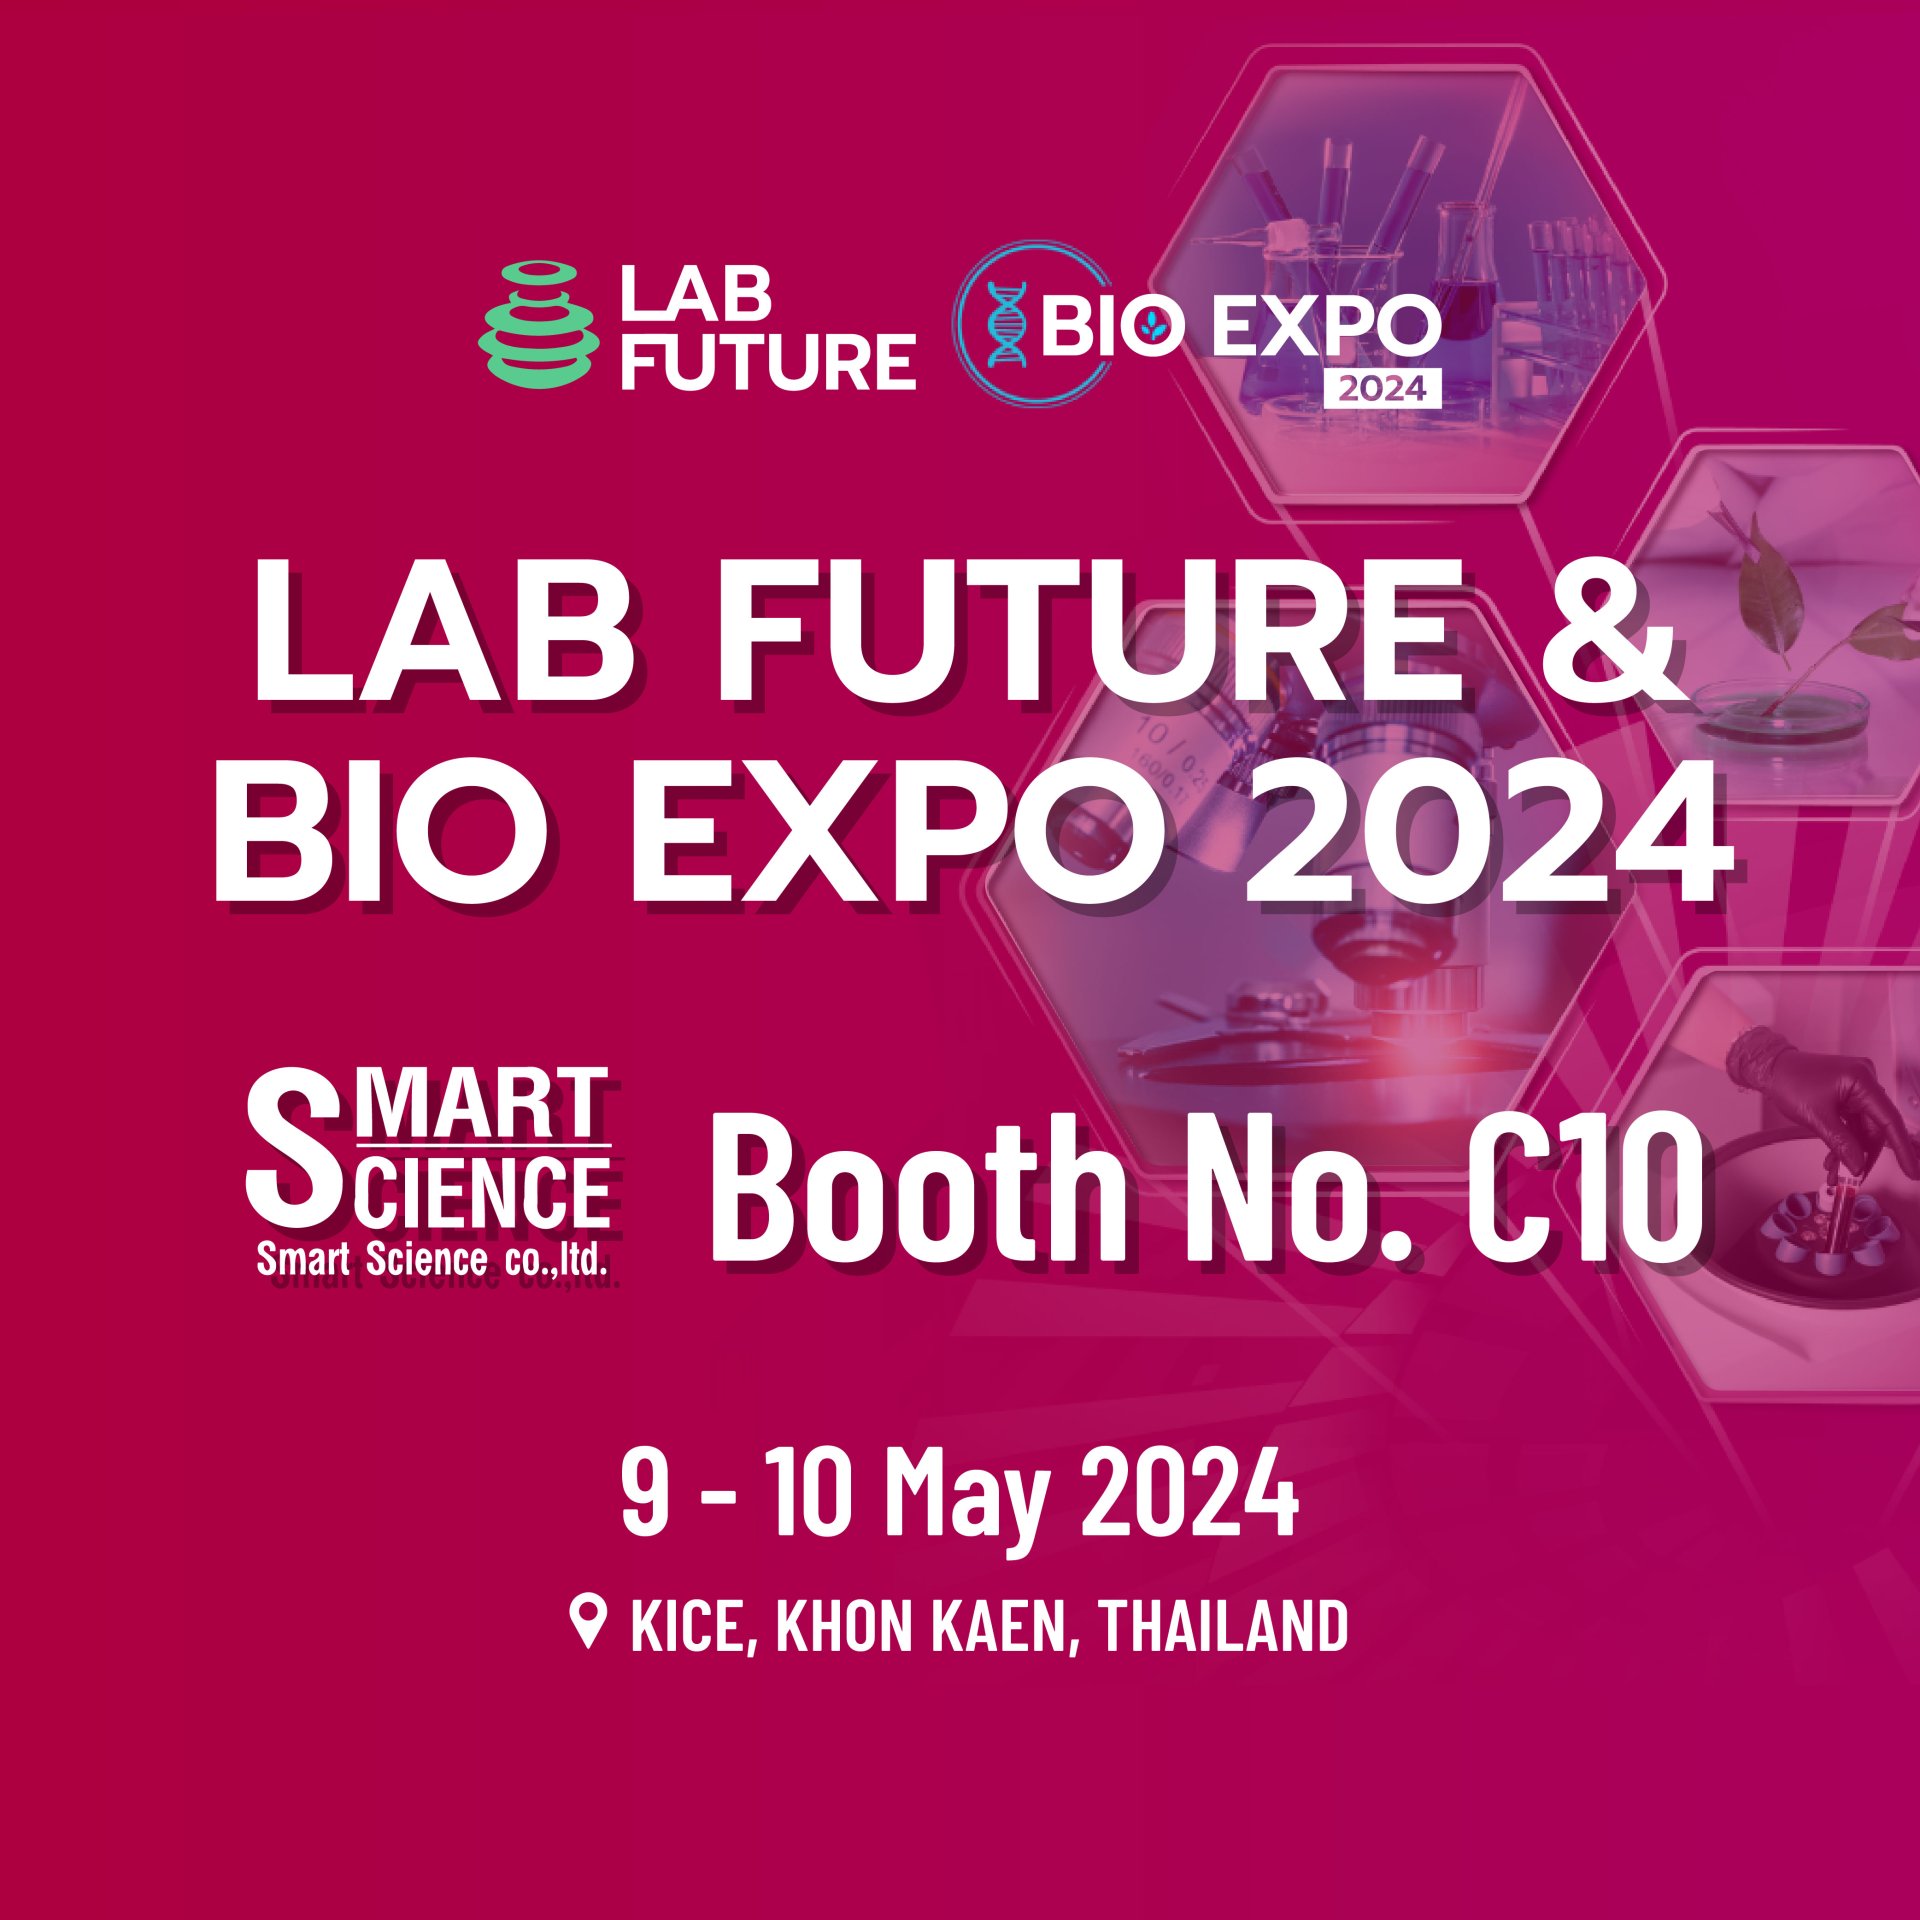 LAB FUTURE & BIO EXPO 2024